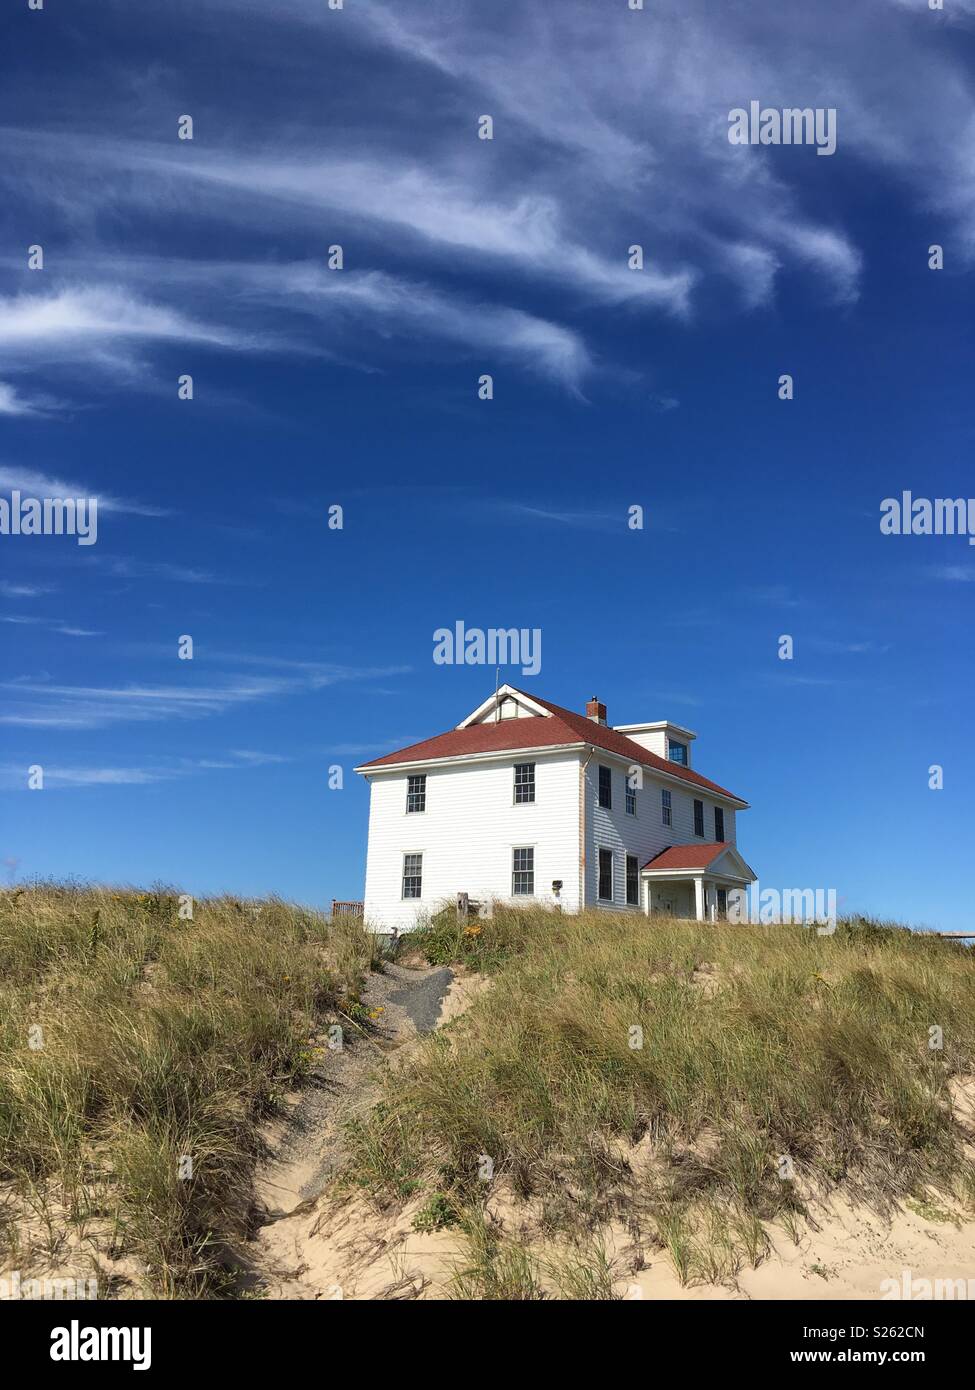 A house on Race Point beach Stock Photo